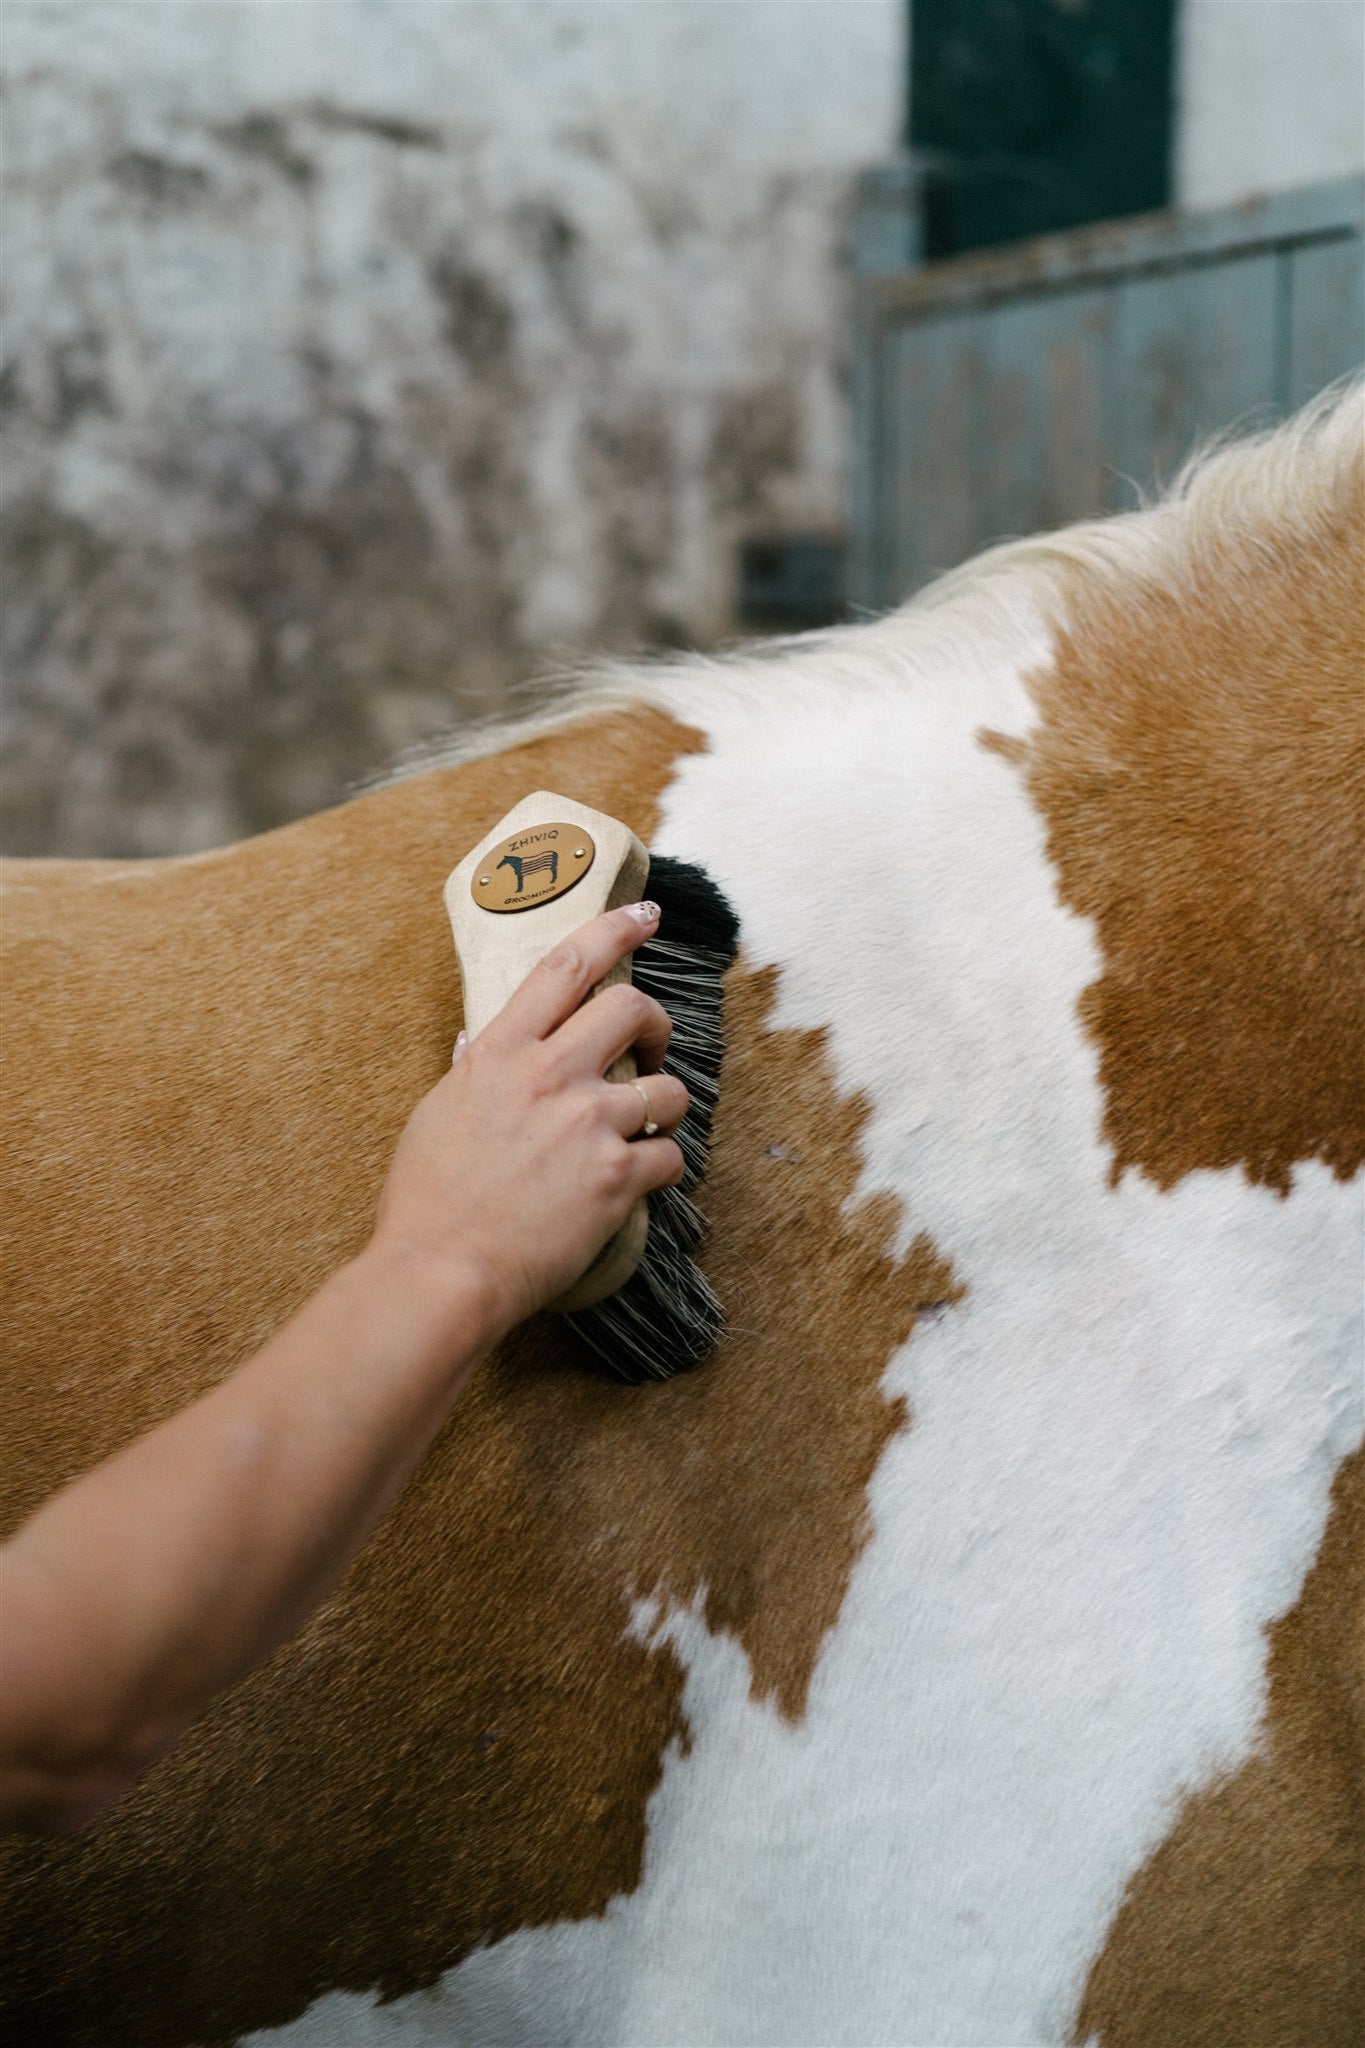 Alles, was Sie über die Marke wissen möchtenZhiviq Banana Horse Hair - Pferdebürste - Finishing-Bürste - Für empfindliche Körperpartien geeignet